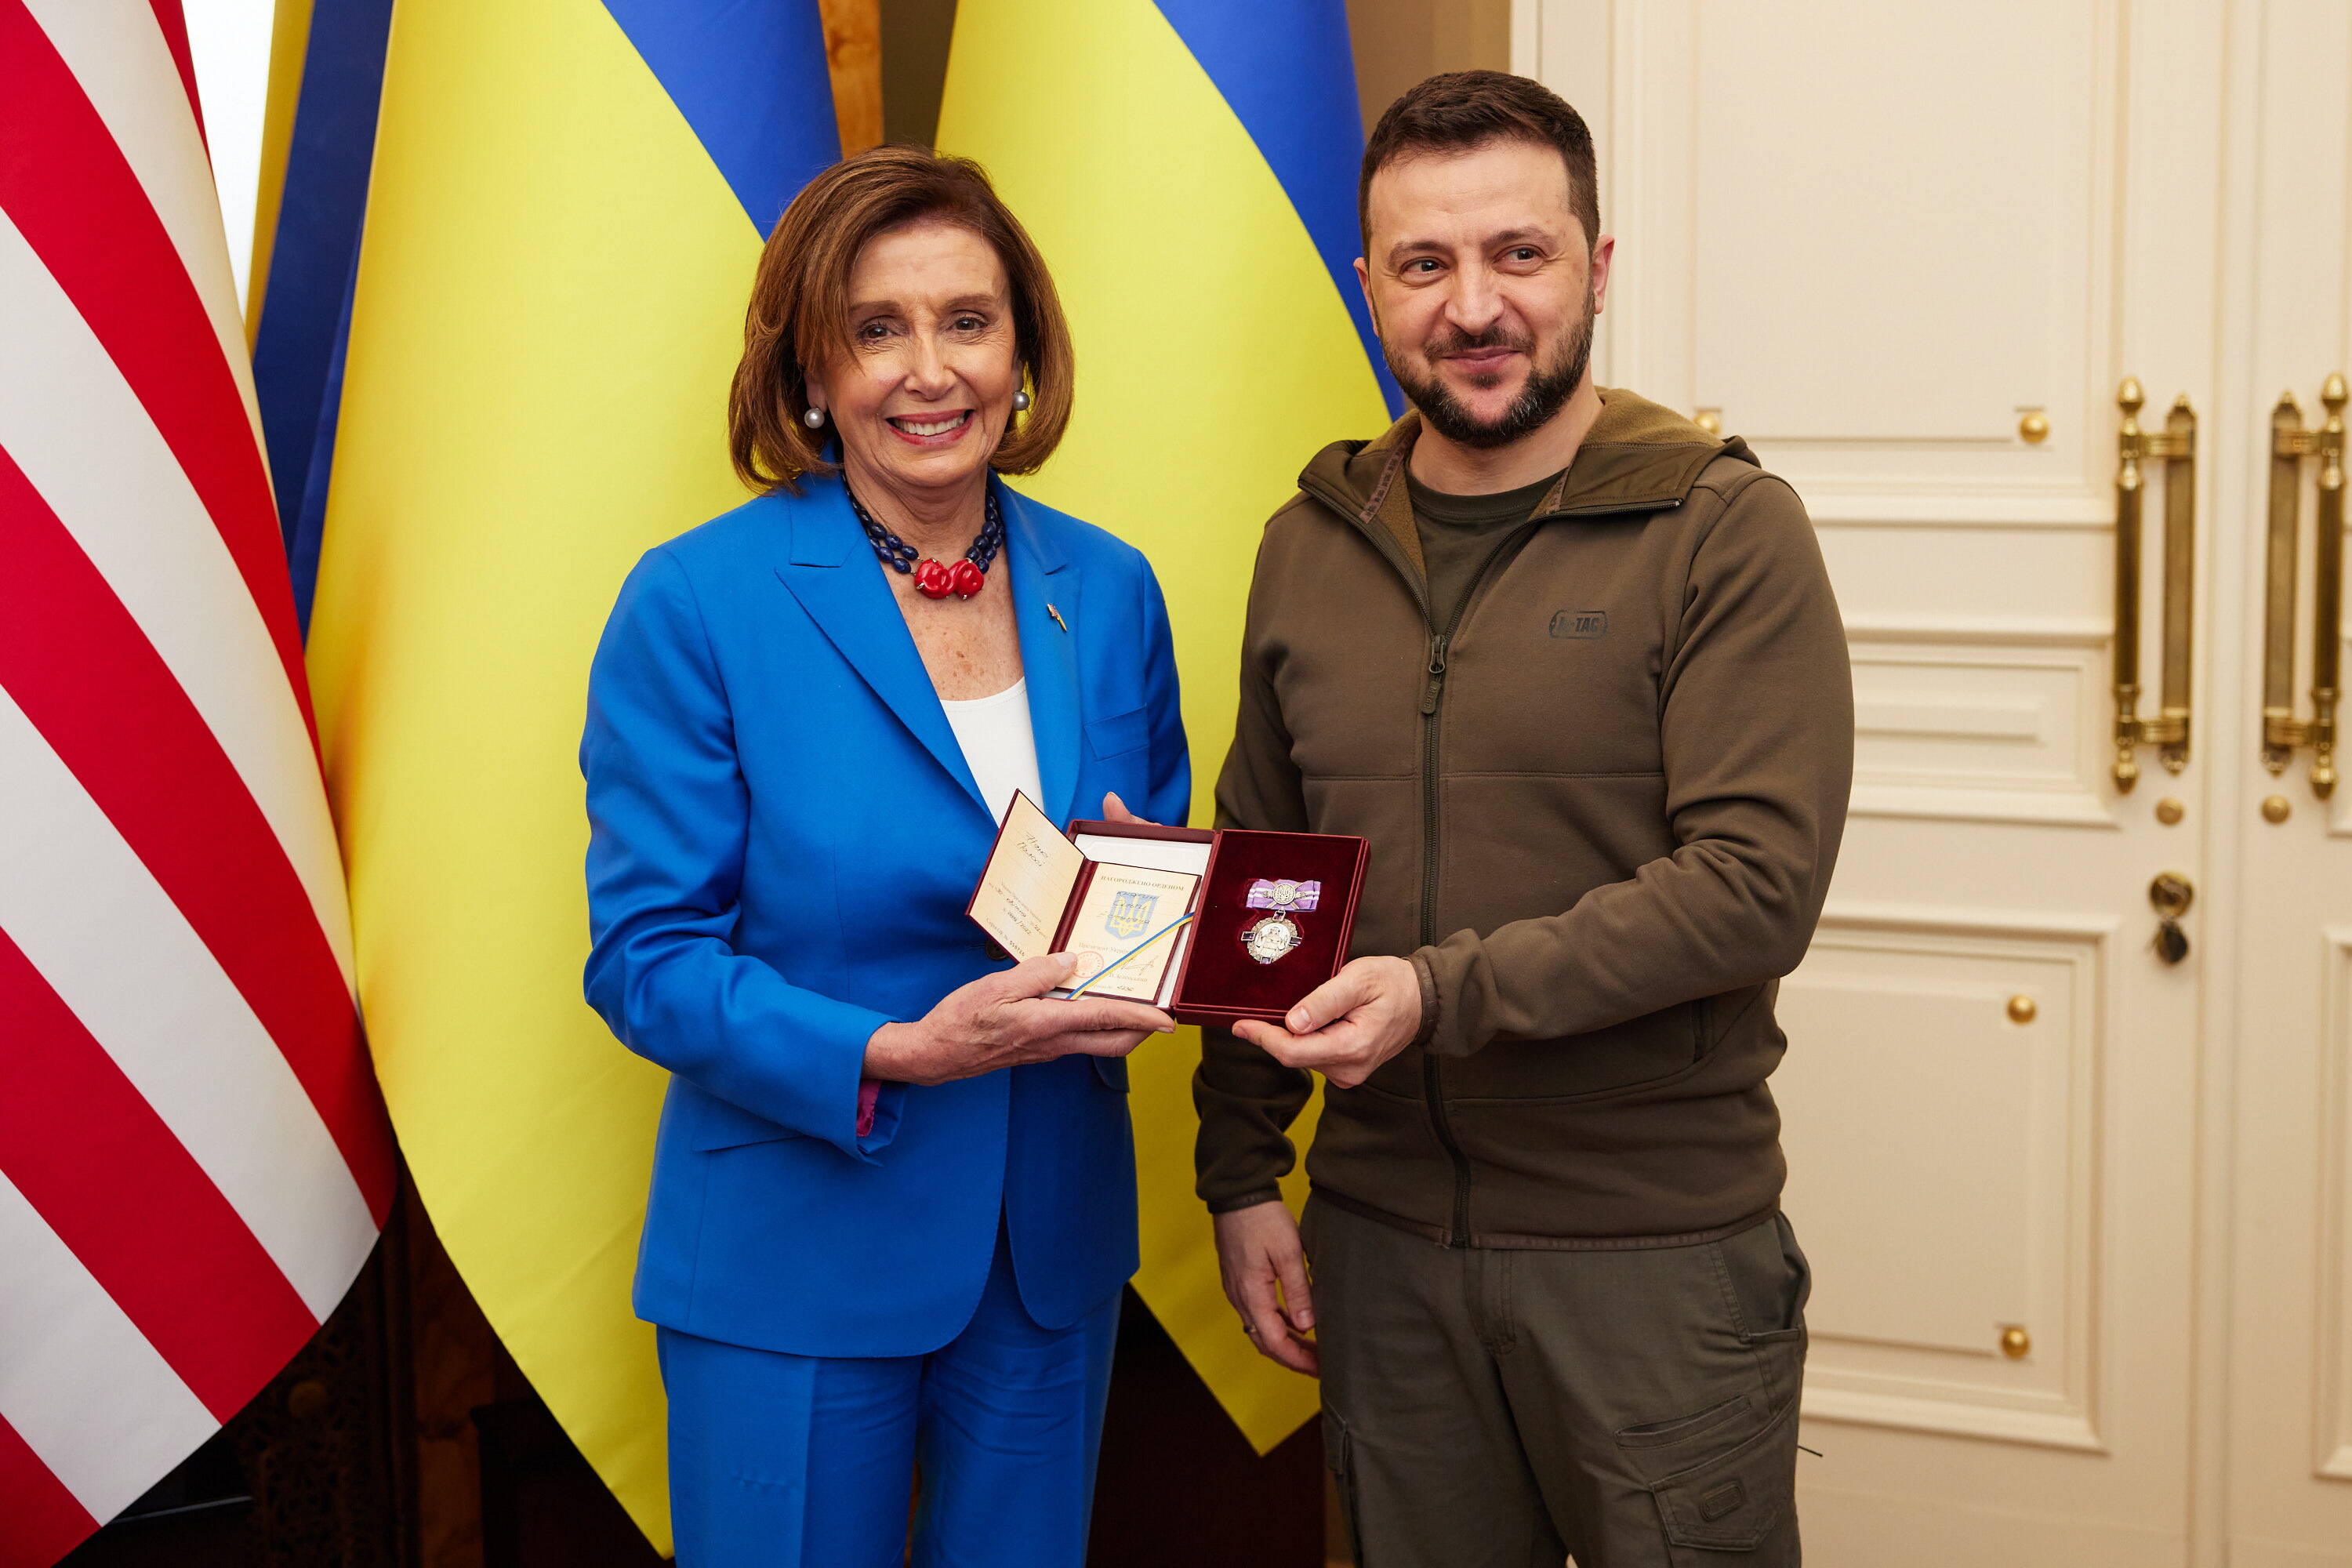 Kijów, 30 kwietnia 2022 r. Prezydent Ukrainy Wołodymyr Zełenski wręcza przewodniczącej Izby Reprezentantów USA Nancy Pelosi medal Orderu Księżnej Olgi po spotkaniu w Kijowie.